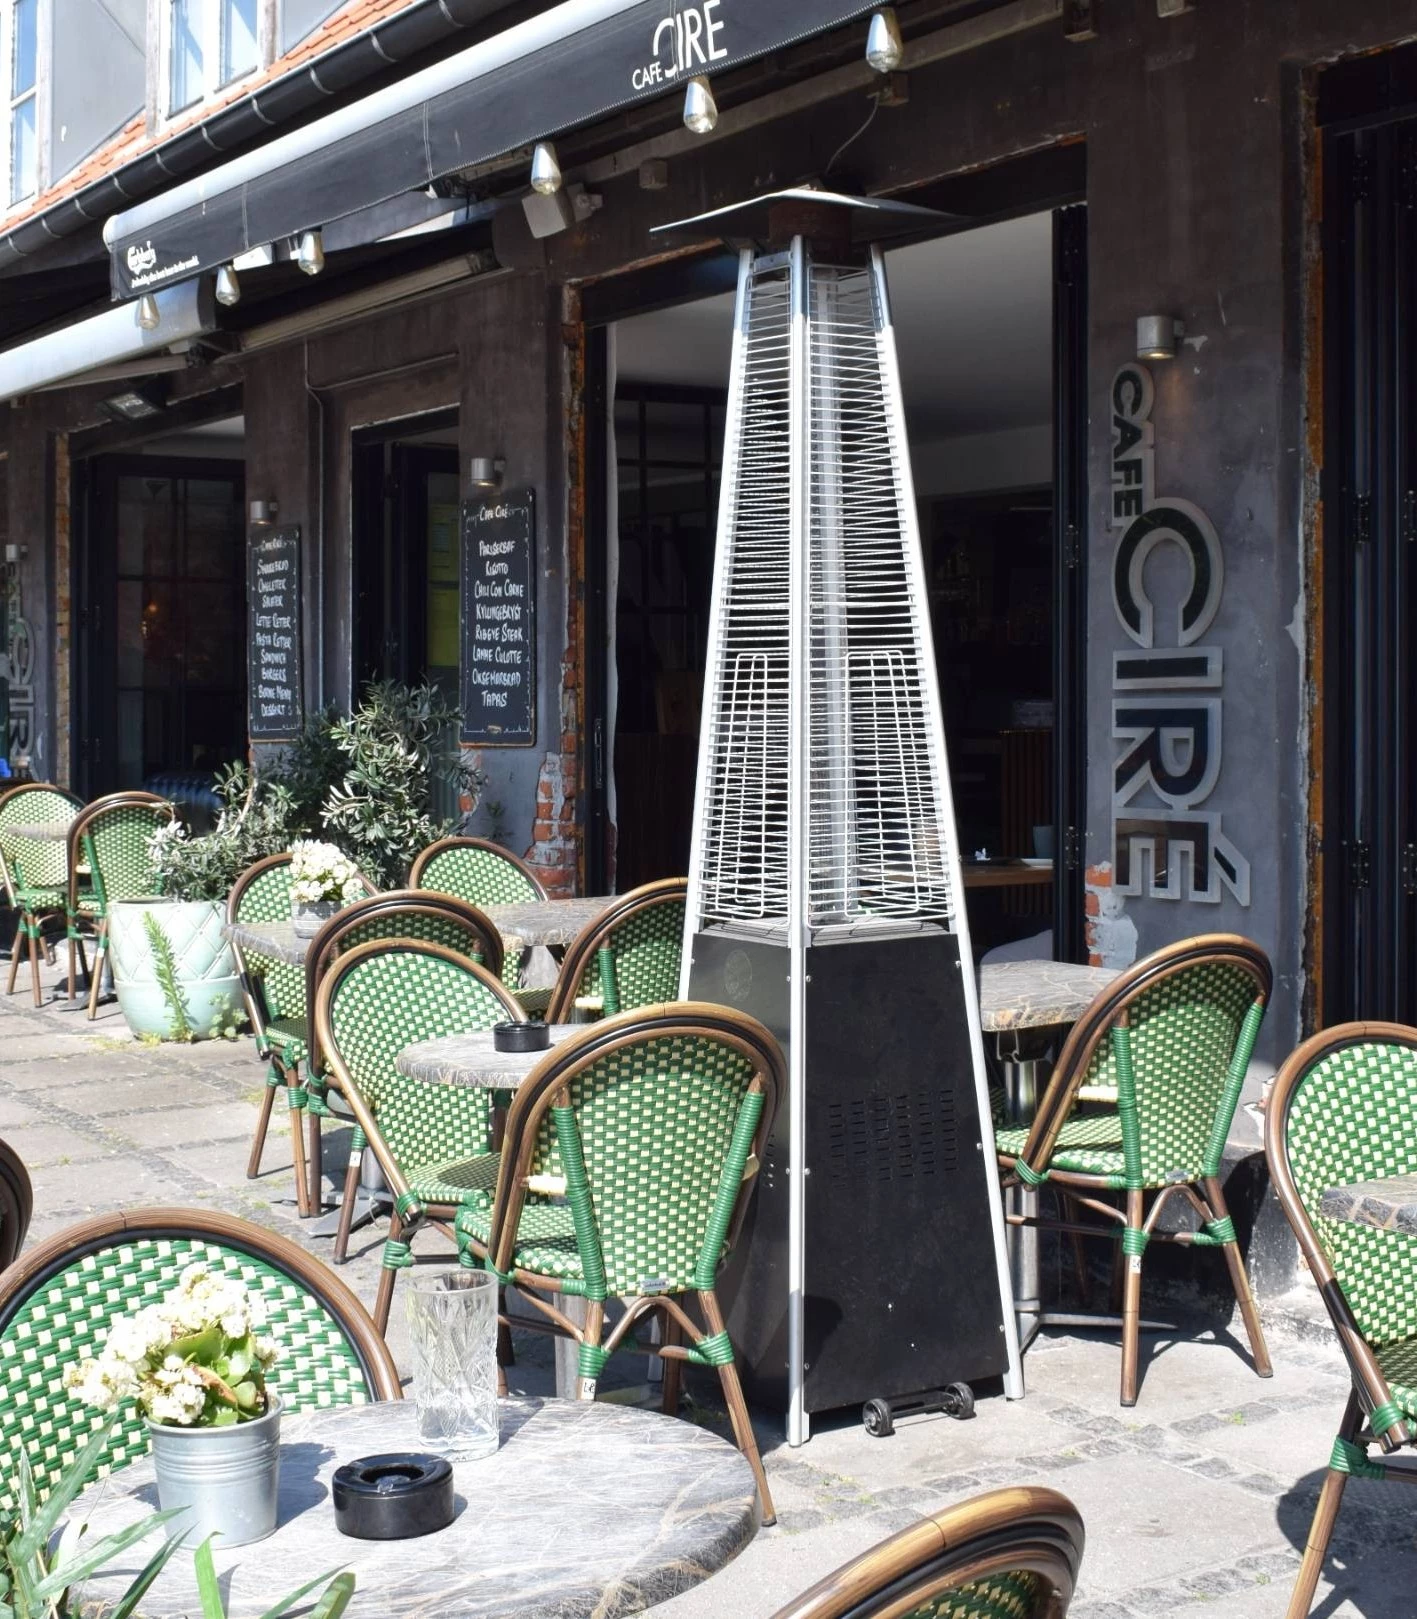 Cafe Ciré